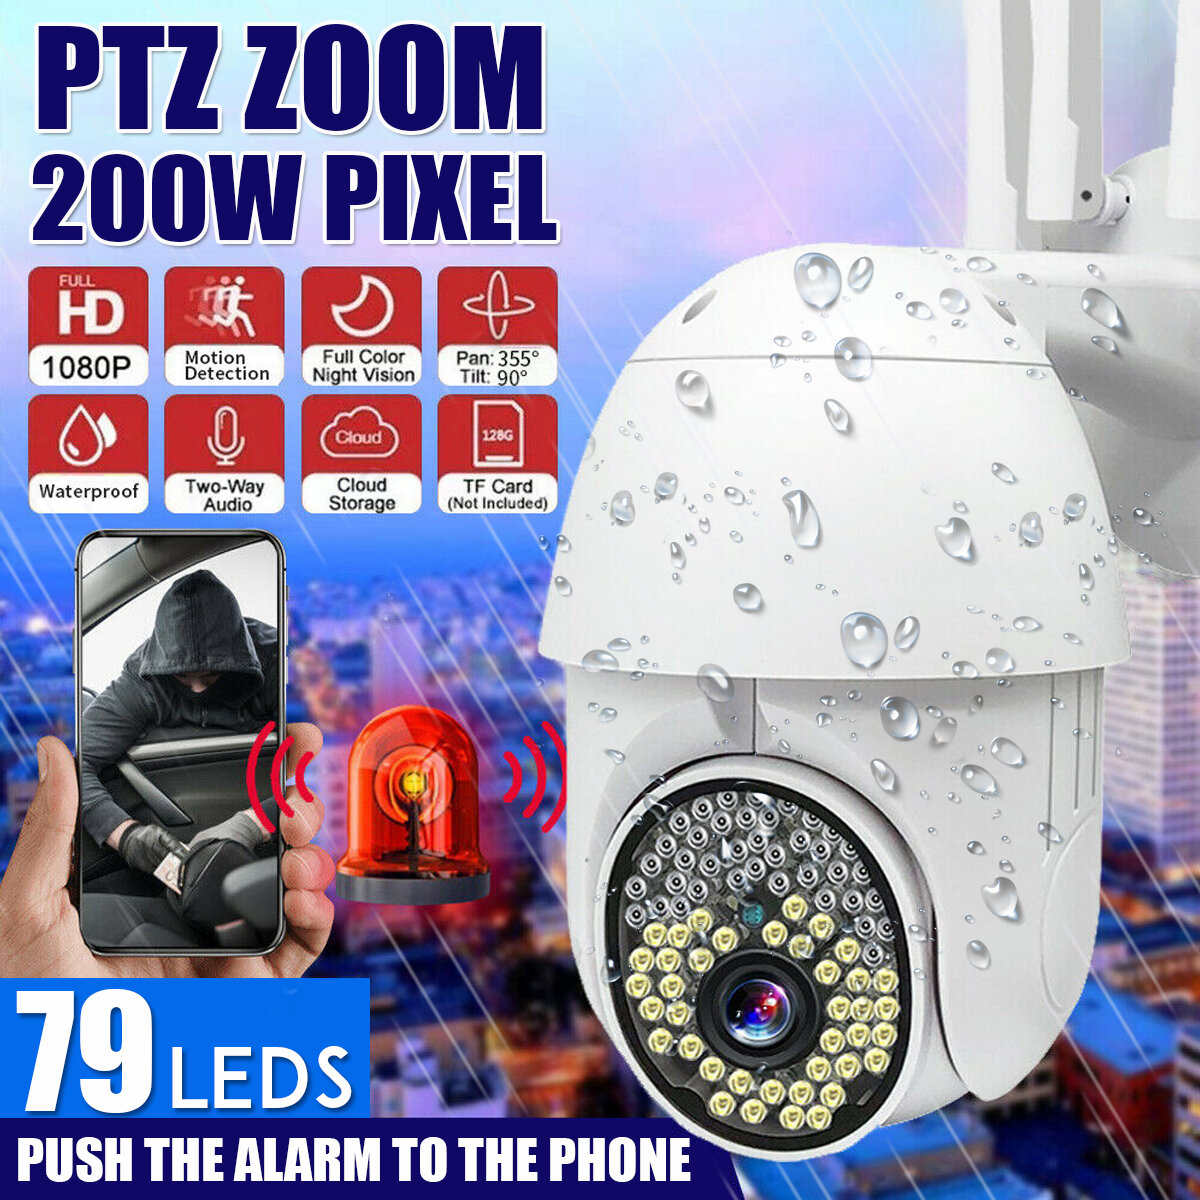 

79LEDS 1080P HD IP Wireless PTZ CCTV На открытом воздухе камера Безопасность WiFi Водонепроницаемы IR Ночь камера